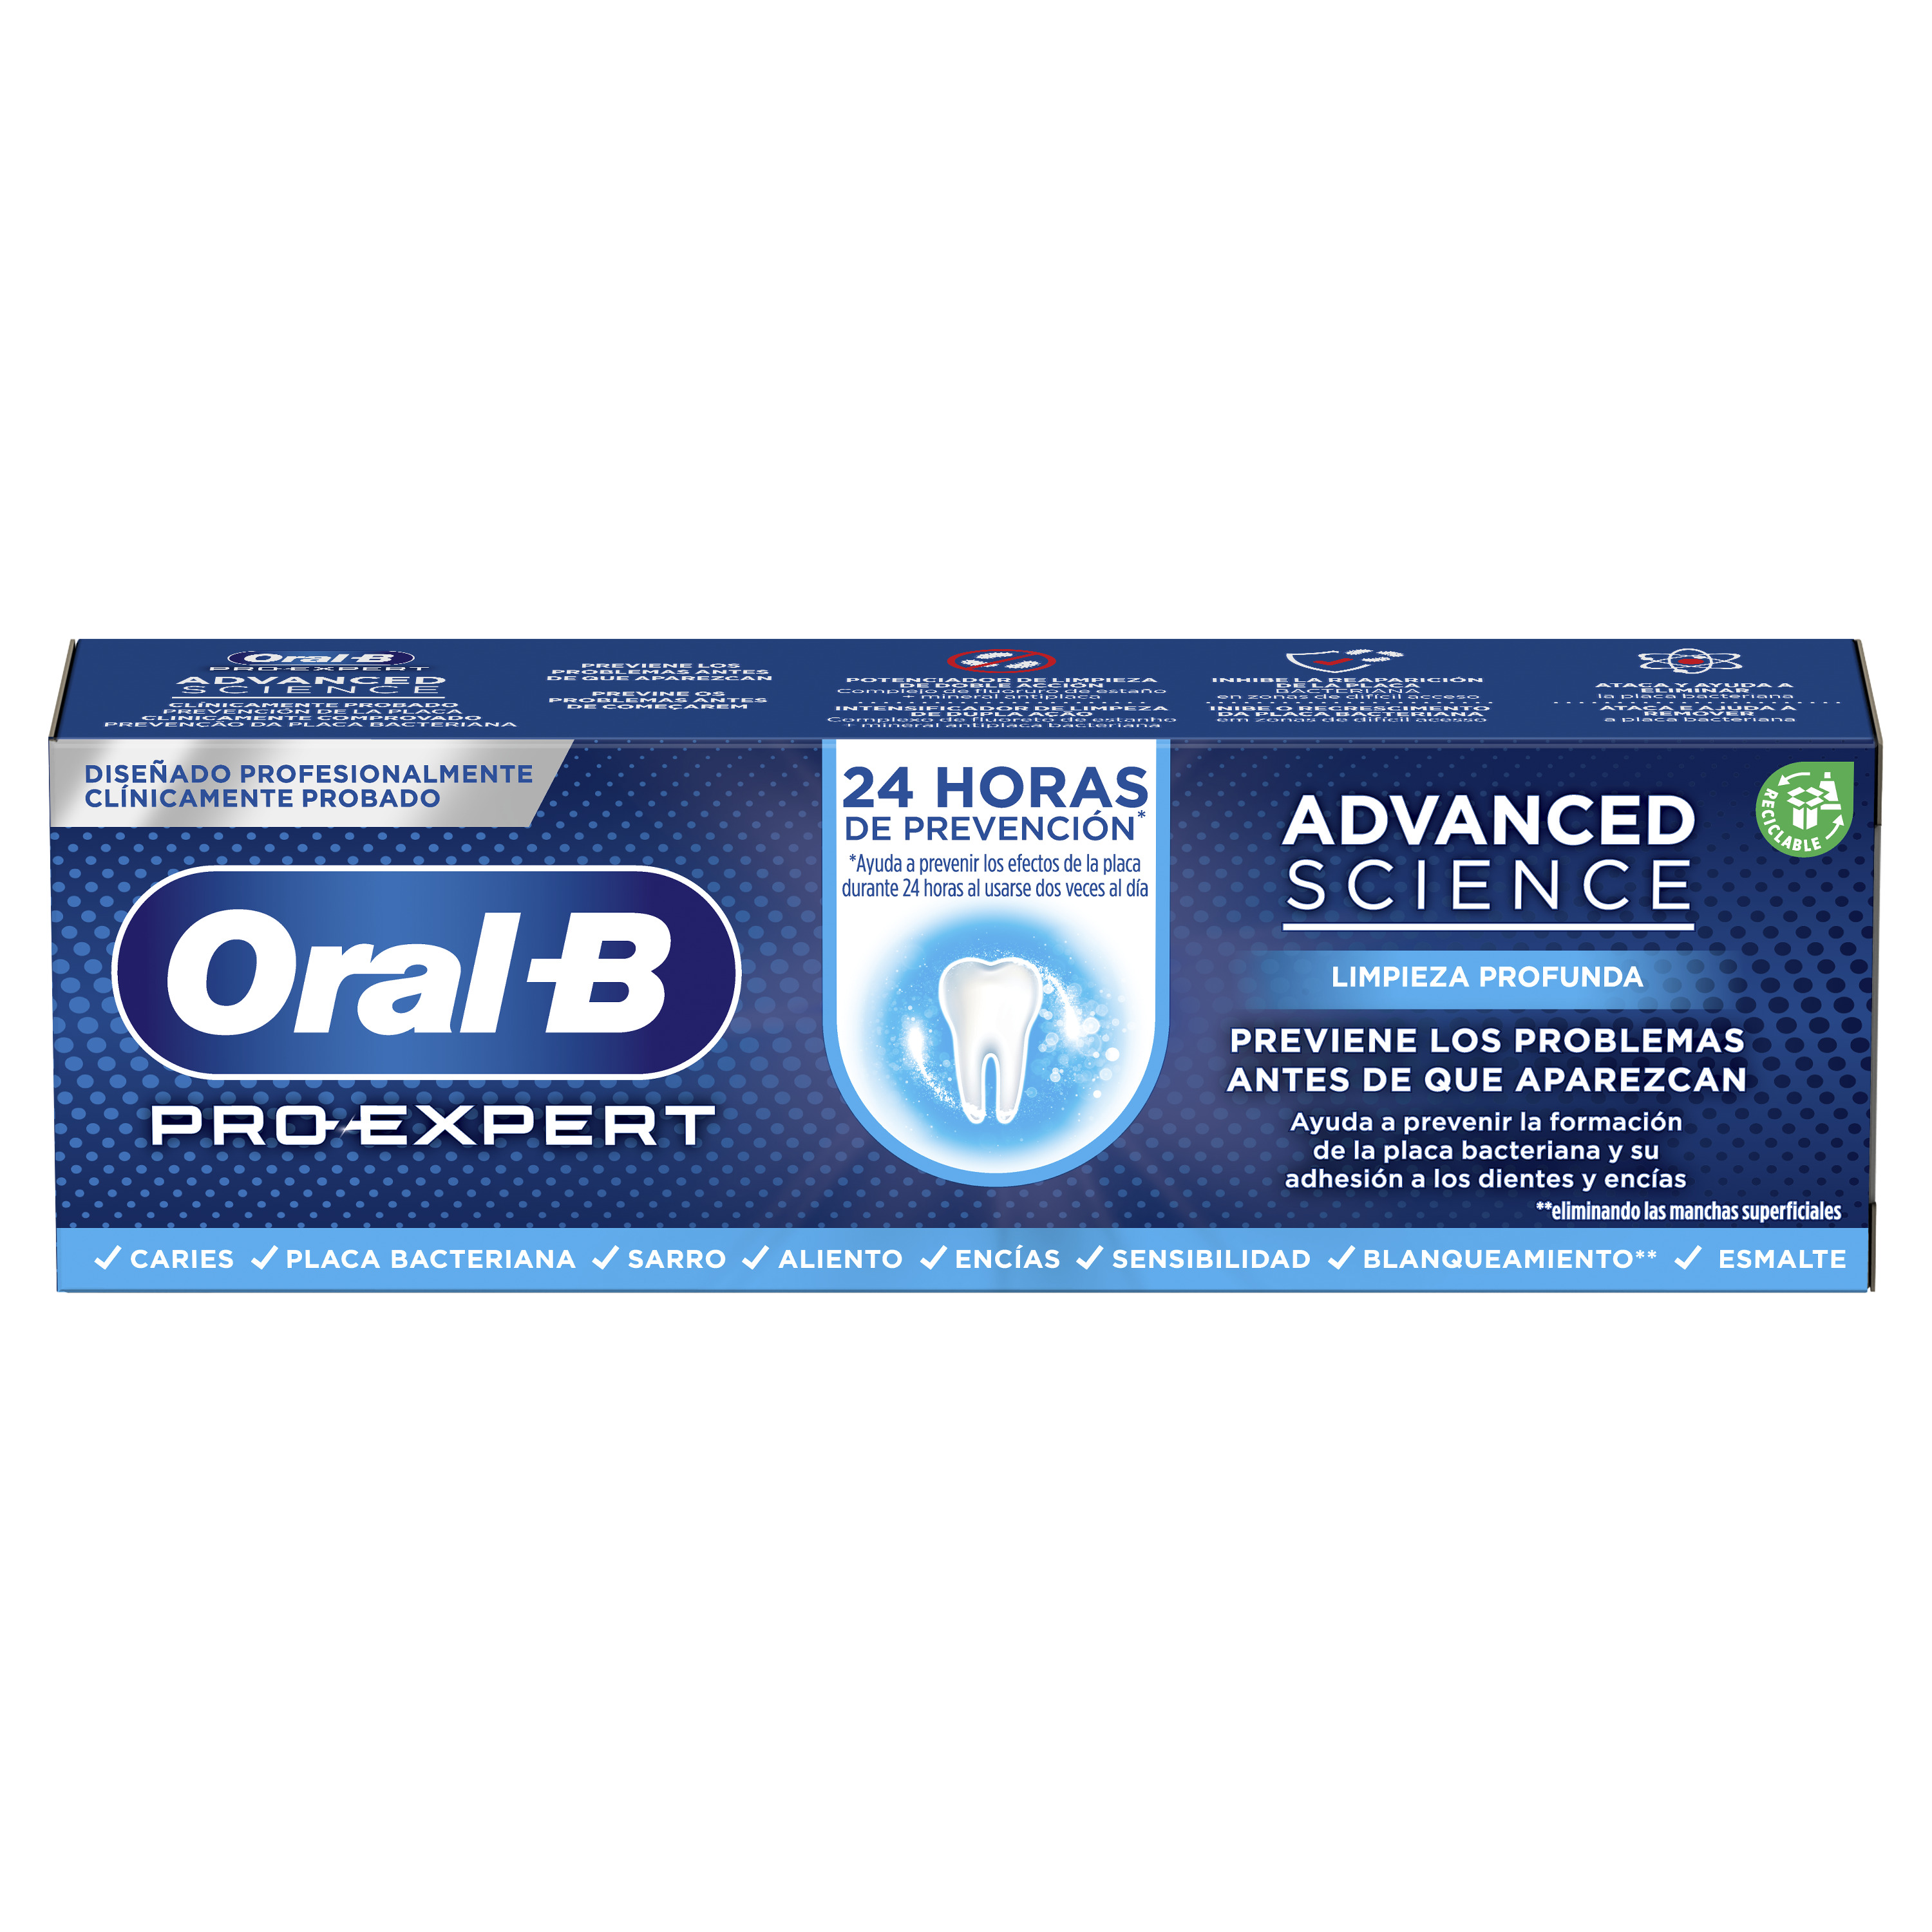 Oral-B Pro-Expert Advanced Science Limpieza Profunda, diseñada profesionalmente con dentistas y probada clínicamente, previene los efectos de la placa bacteriana durante 24 horas al usarse 2 veces al día, así como su adhesión a los dientes y encías.
